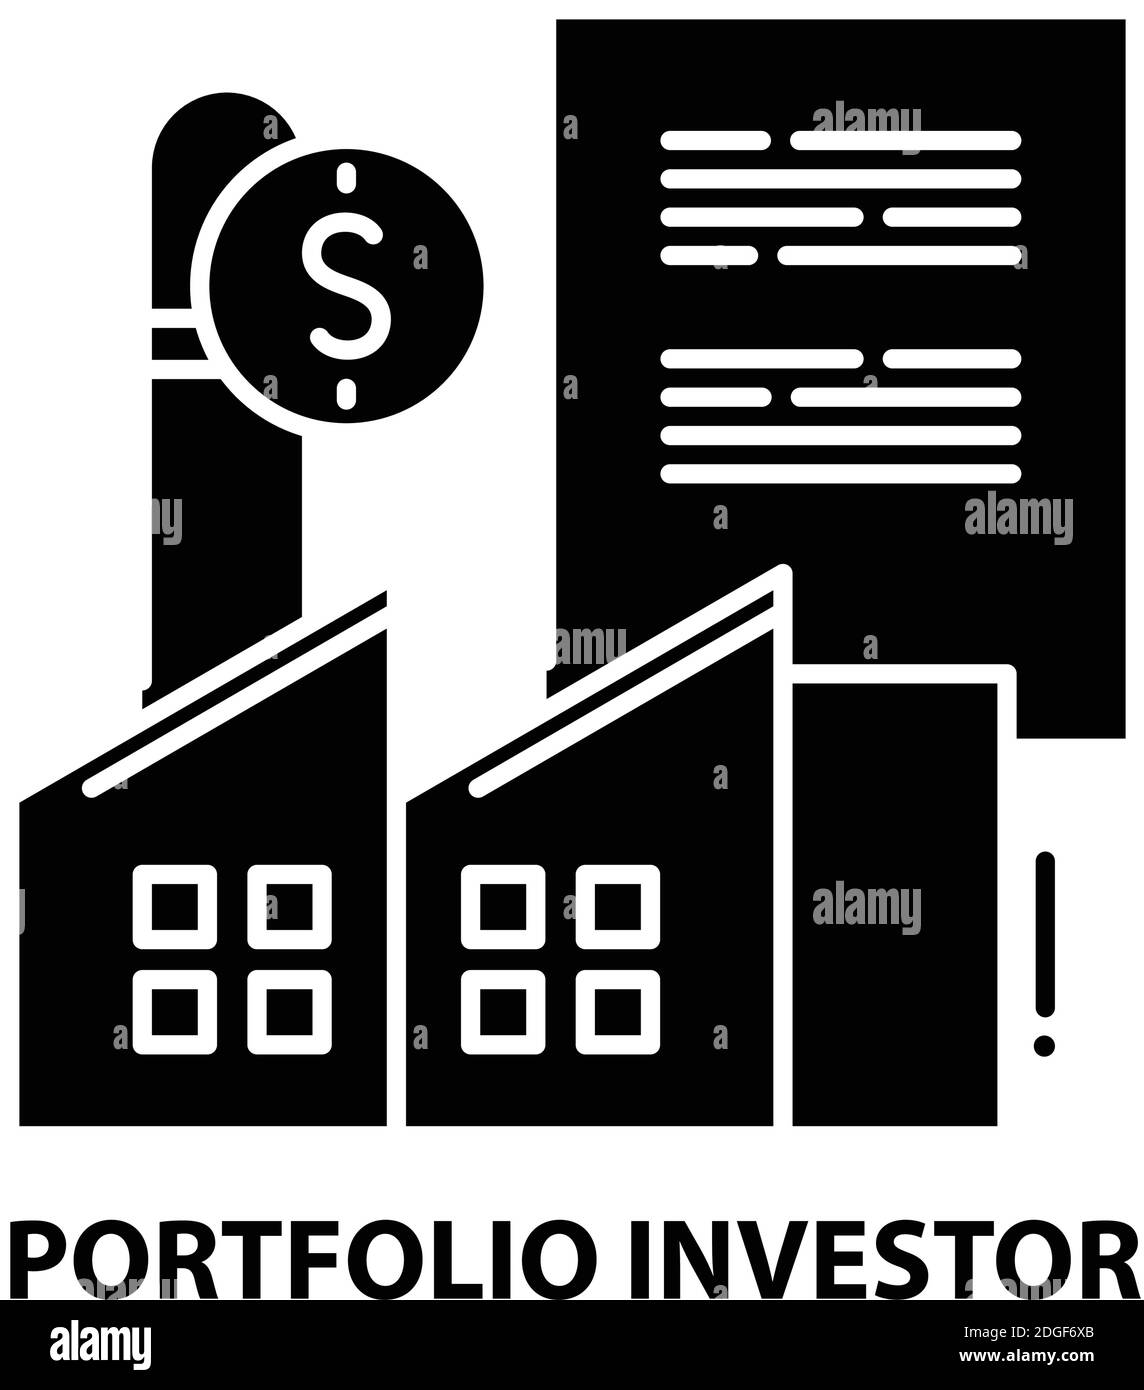 Portfolio Investor Icon, schwarzes Vektorzeichen mit editierbaren Striche, Konzeptdarstellung Stock Vektor